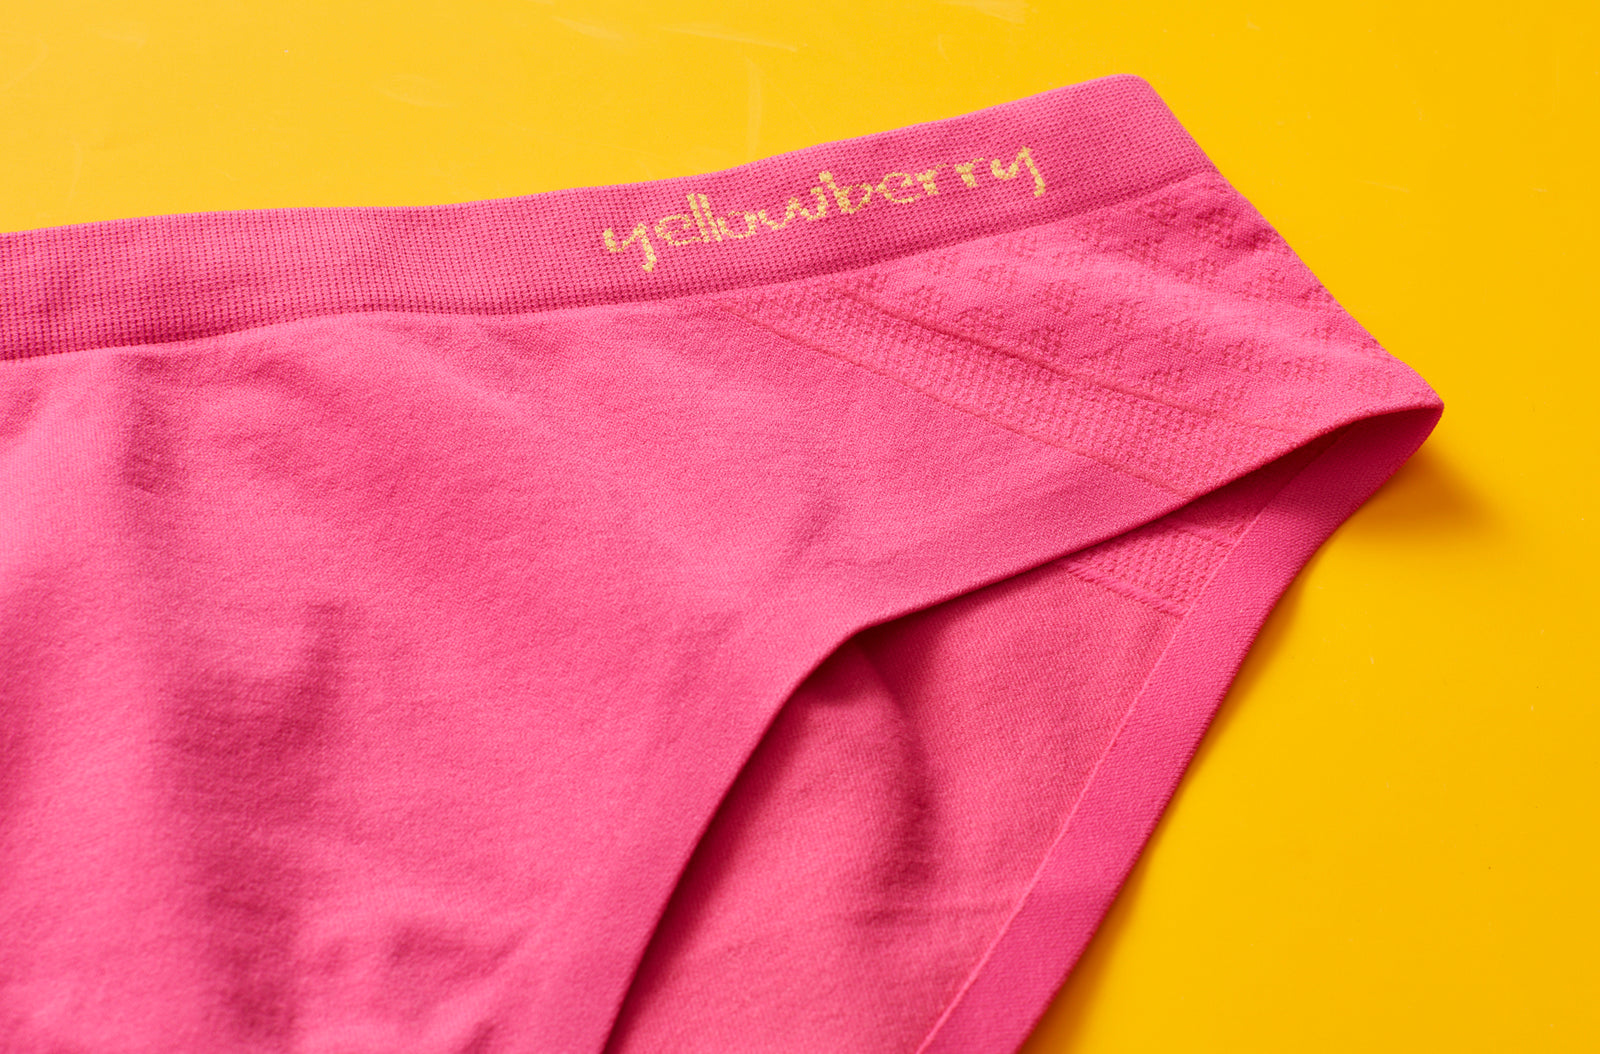 Girls Underwear - The BEST Cotton and Seamless underwear for teens -  Yellowberry